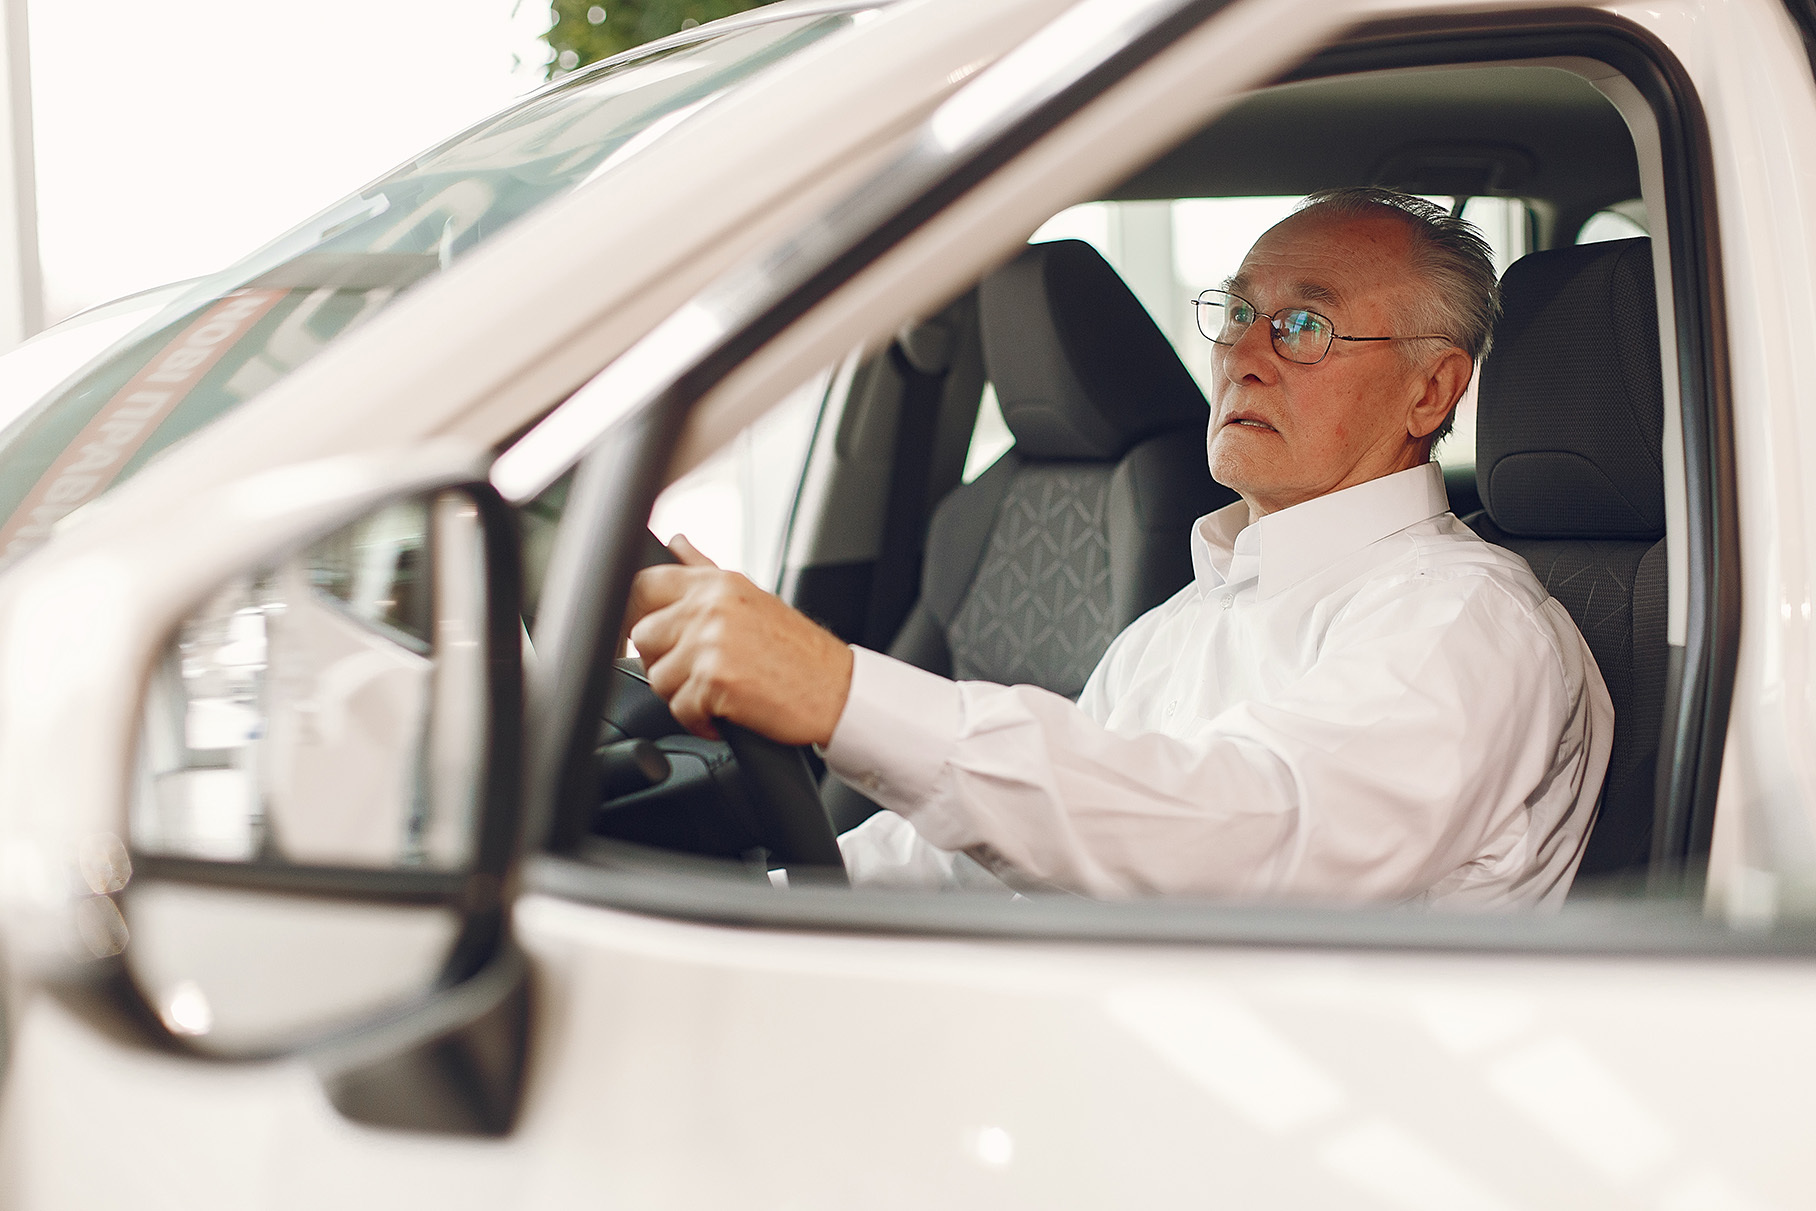 Водители старше 75 лет не должны управлять автомобилями